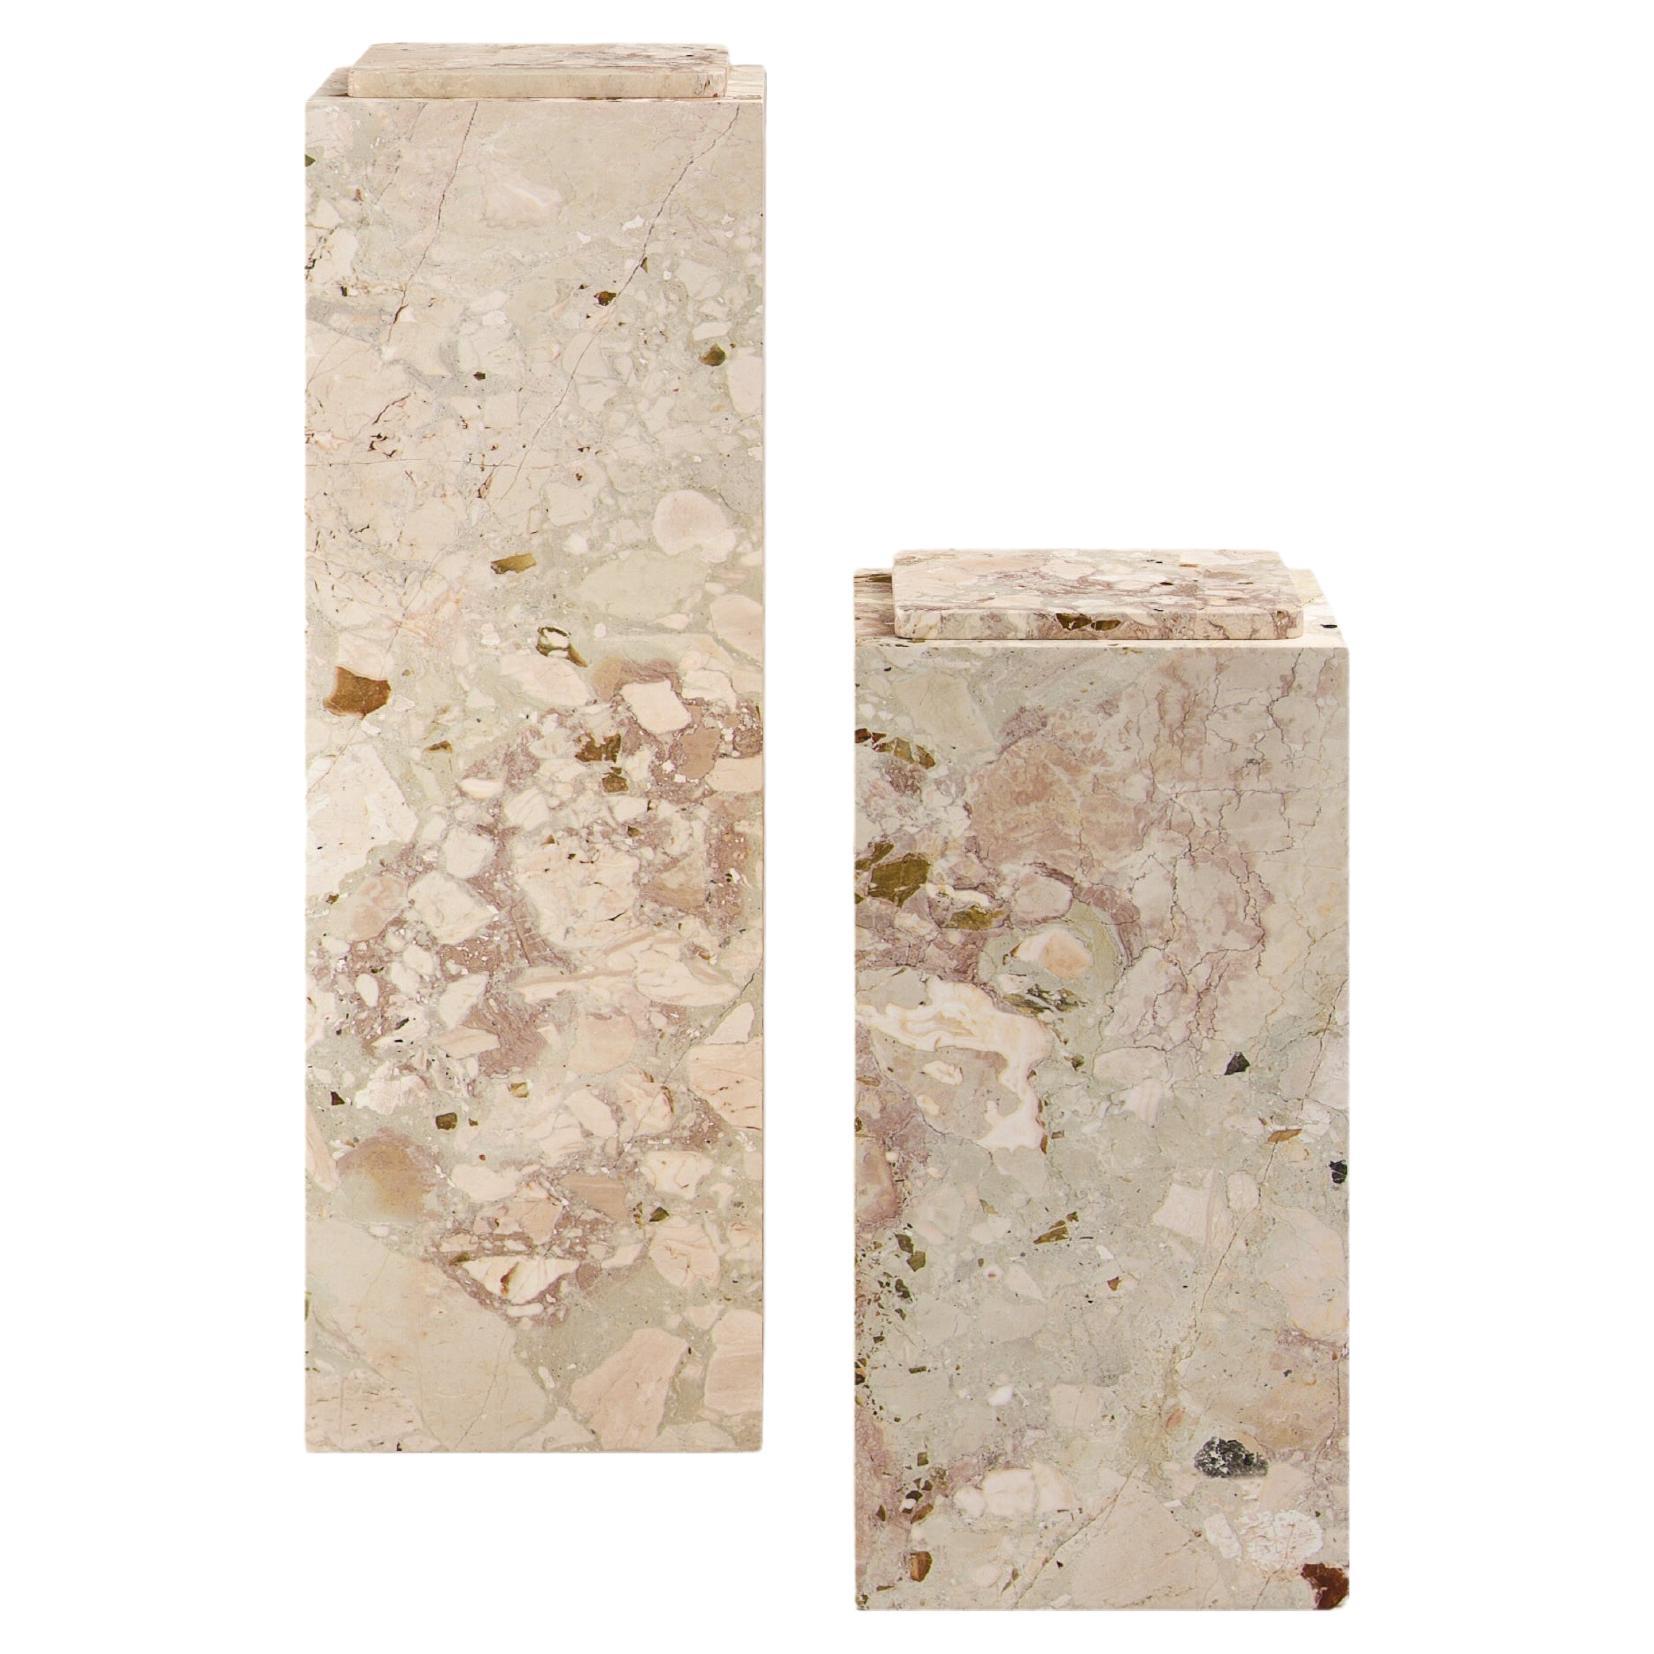 FORM(LA) Cubo Pedestal 12”L x 12"W x 36”H Breccia Rosa Marble For Sale